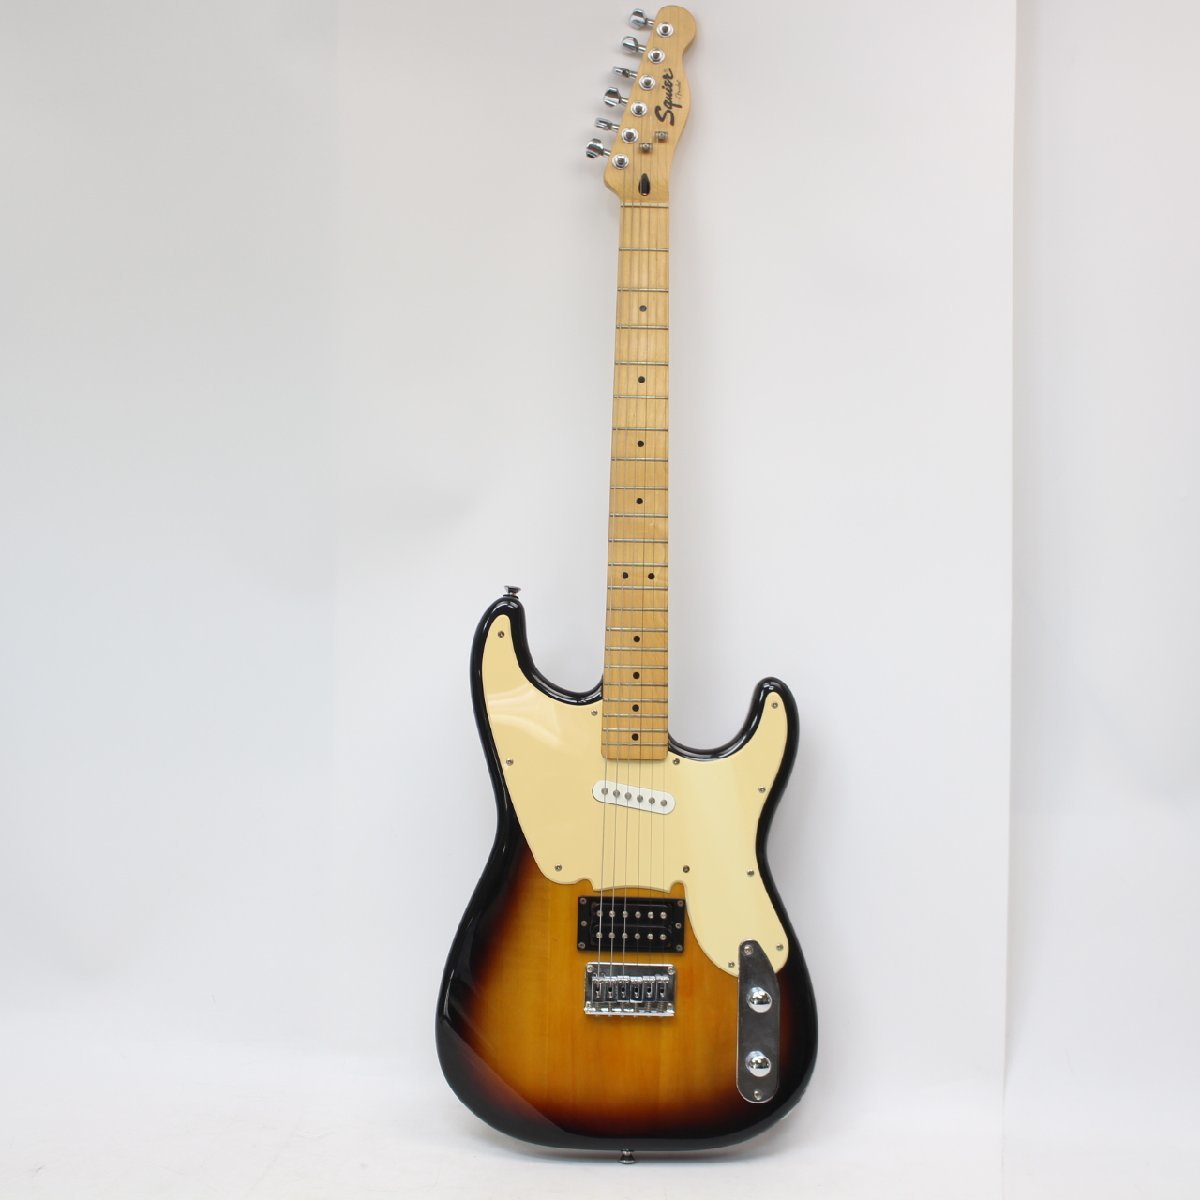 東京都大田区にて Squier by Fender エレキギター 2-Tone Sunburst Vintage Modified SQUIER '51 2013年製 を出張買取させて頂きました。